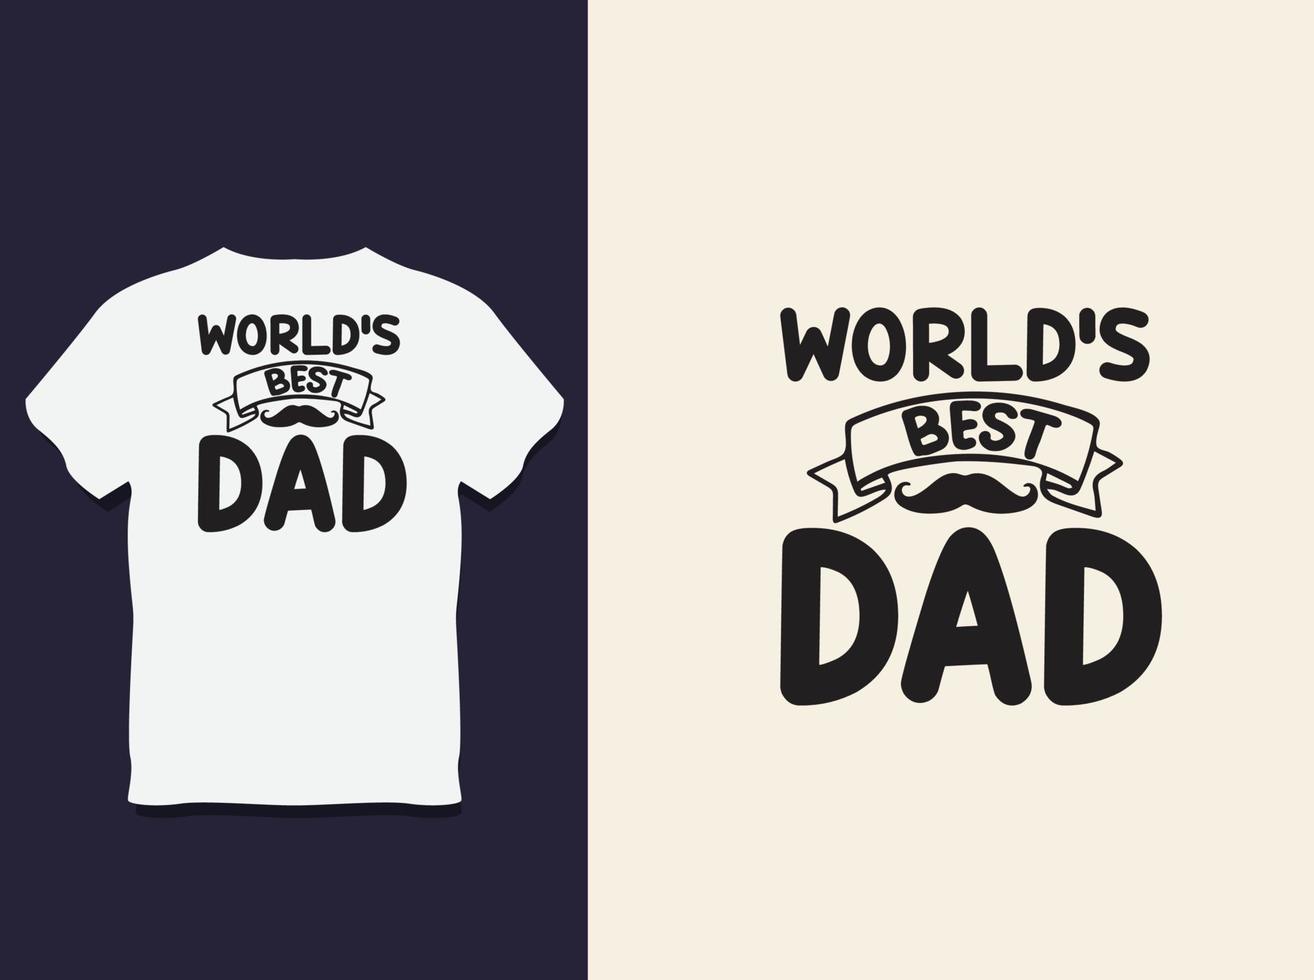 diseño de camiseta de tipografía del día del padre con vector